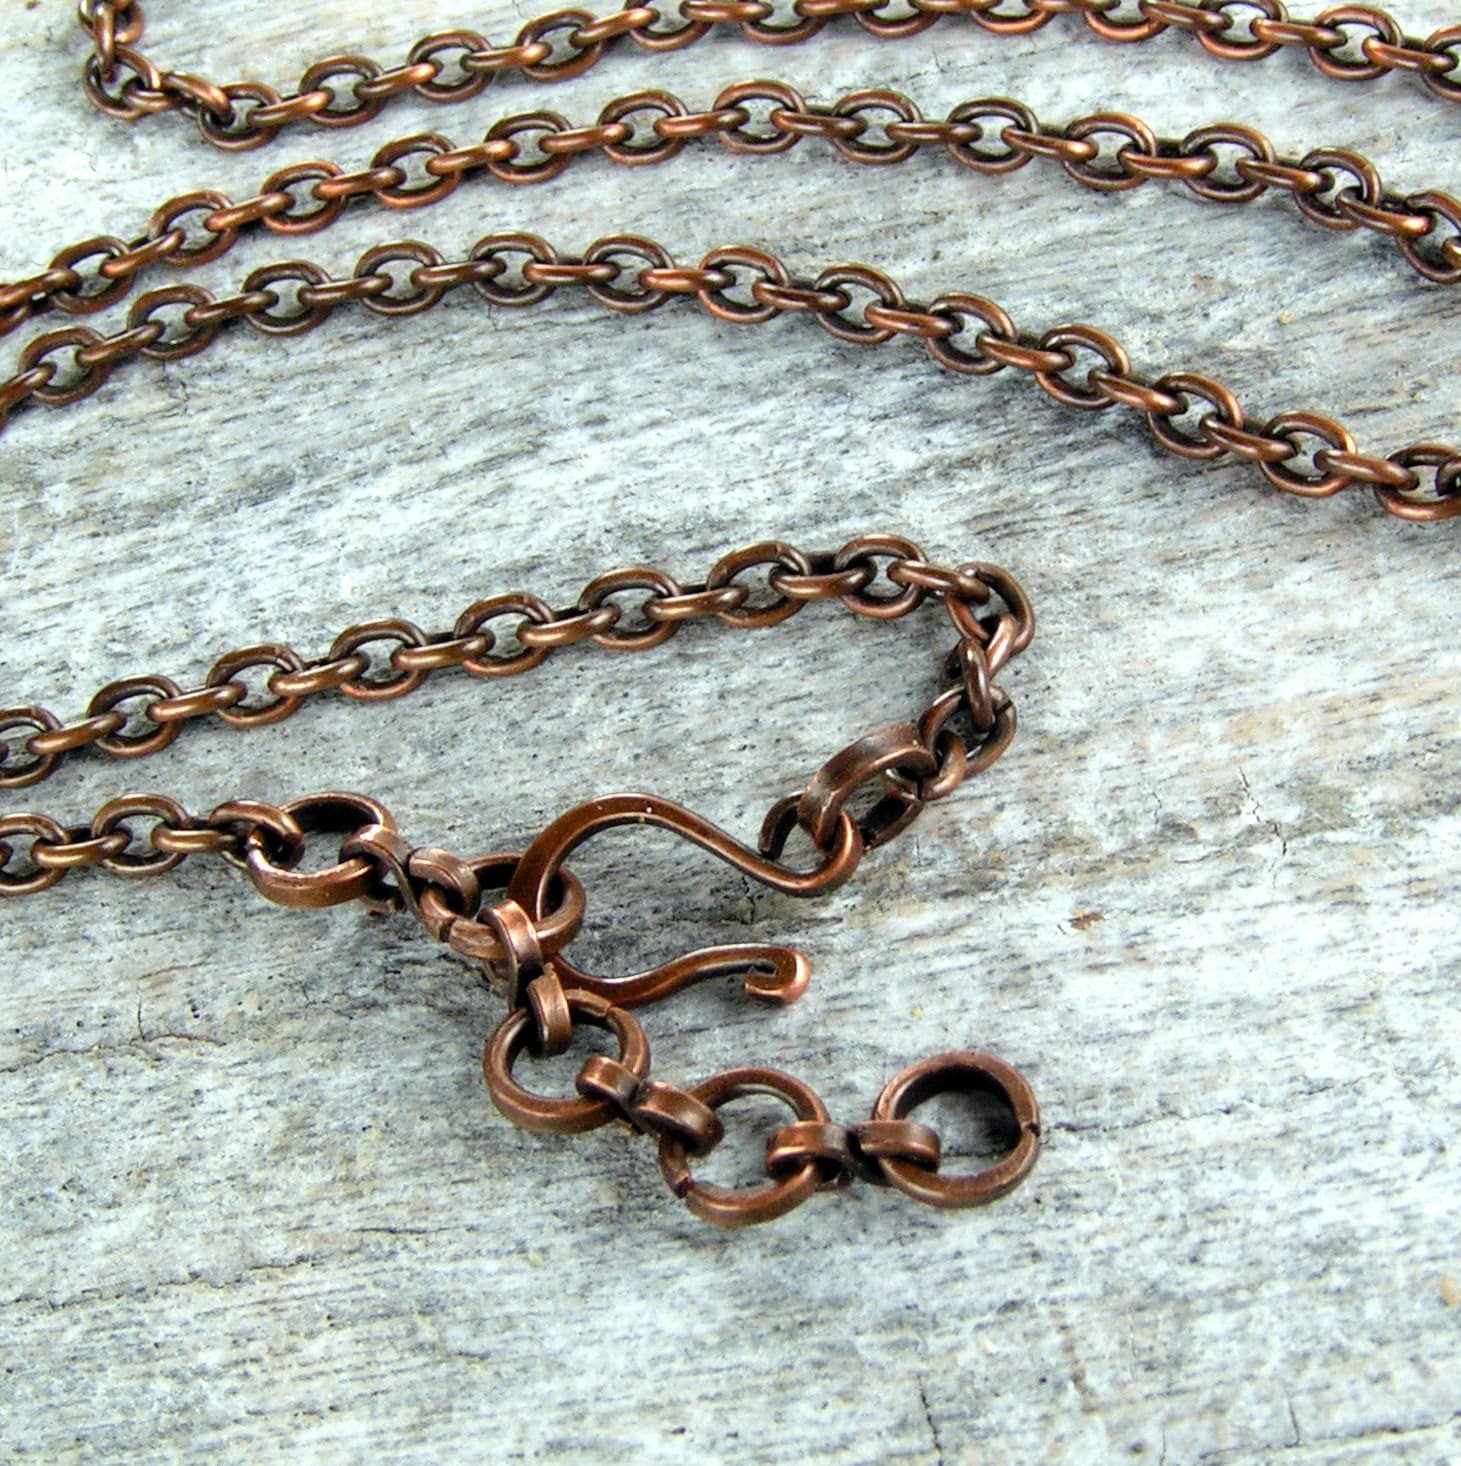 Antique Copper Chain Copper Chain Solid Copper Chain Copper Necklace Raw  Copper Chain Copper Jewellery solid Copper Necklace 